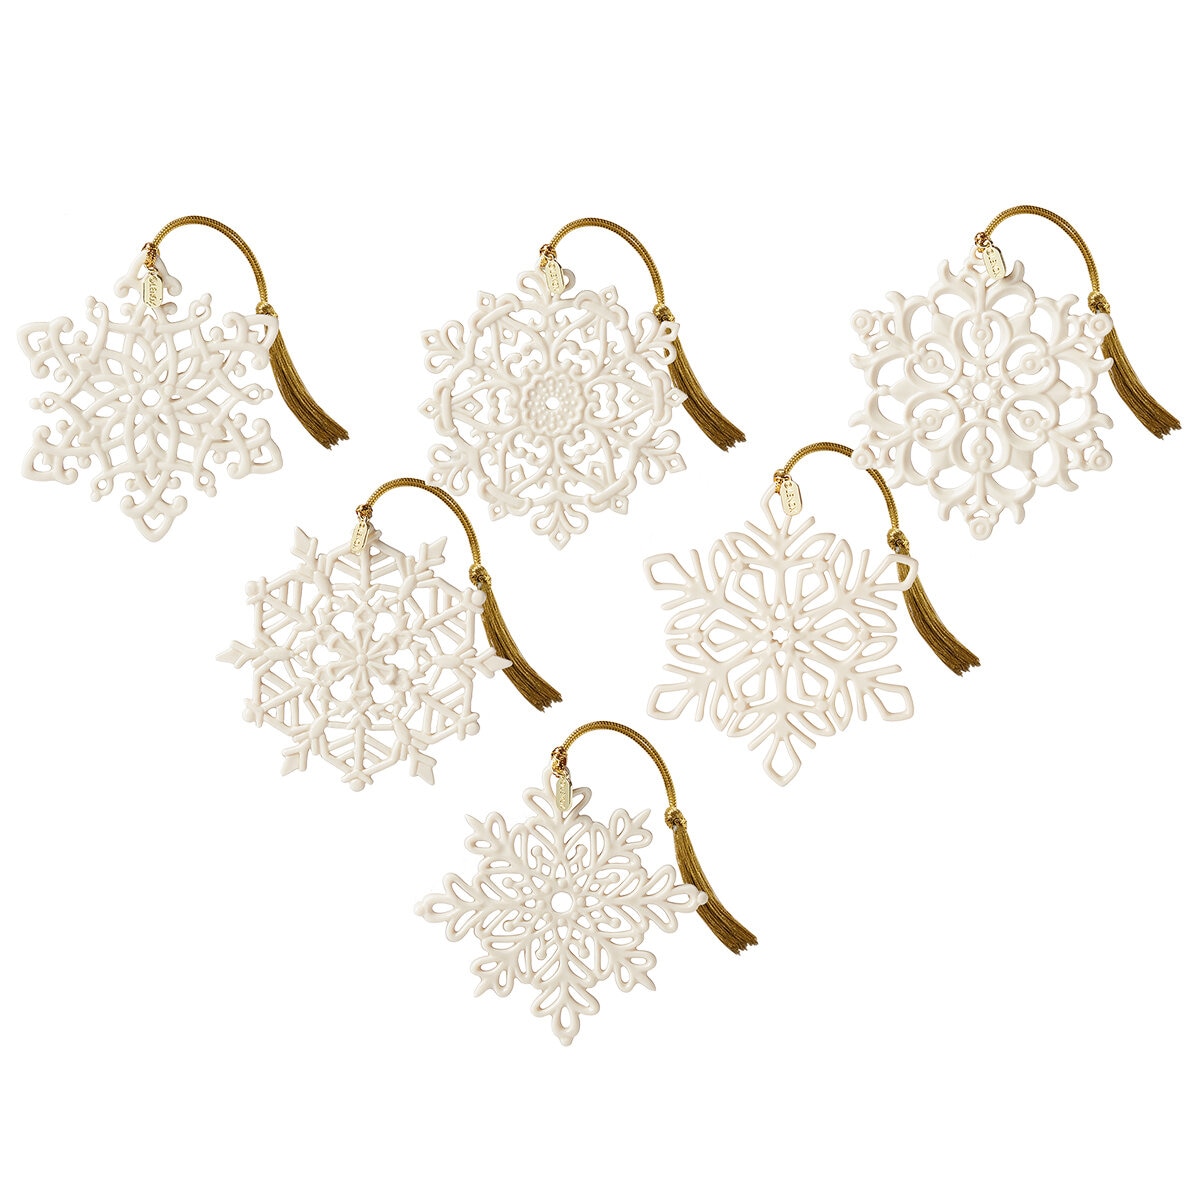 Lenox Porcelain Snowflake Ornaments Set of 6 | Costco Aus...